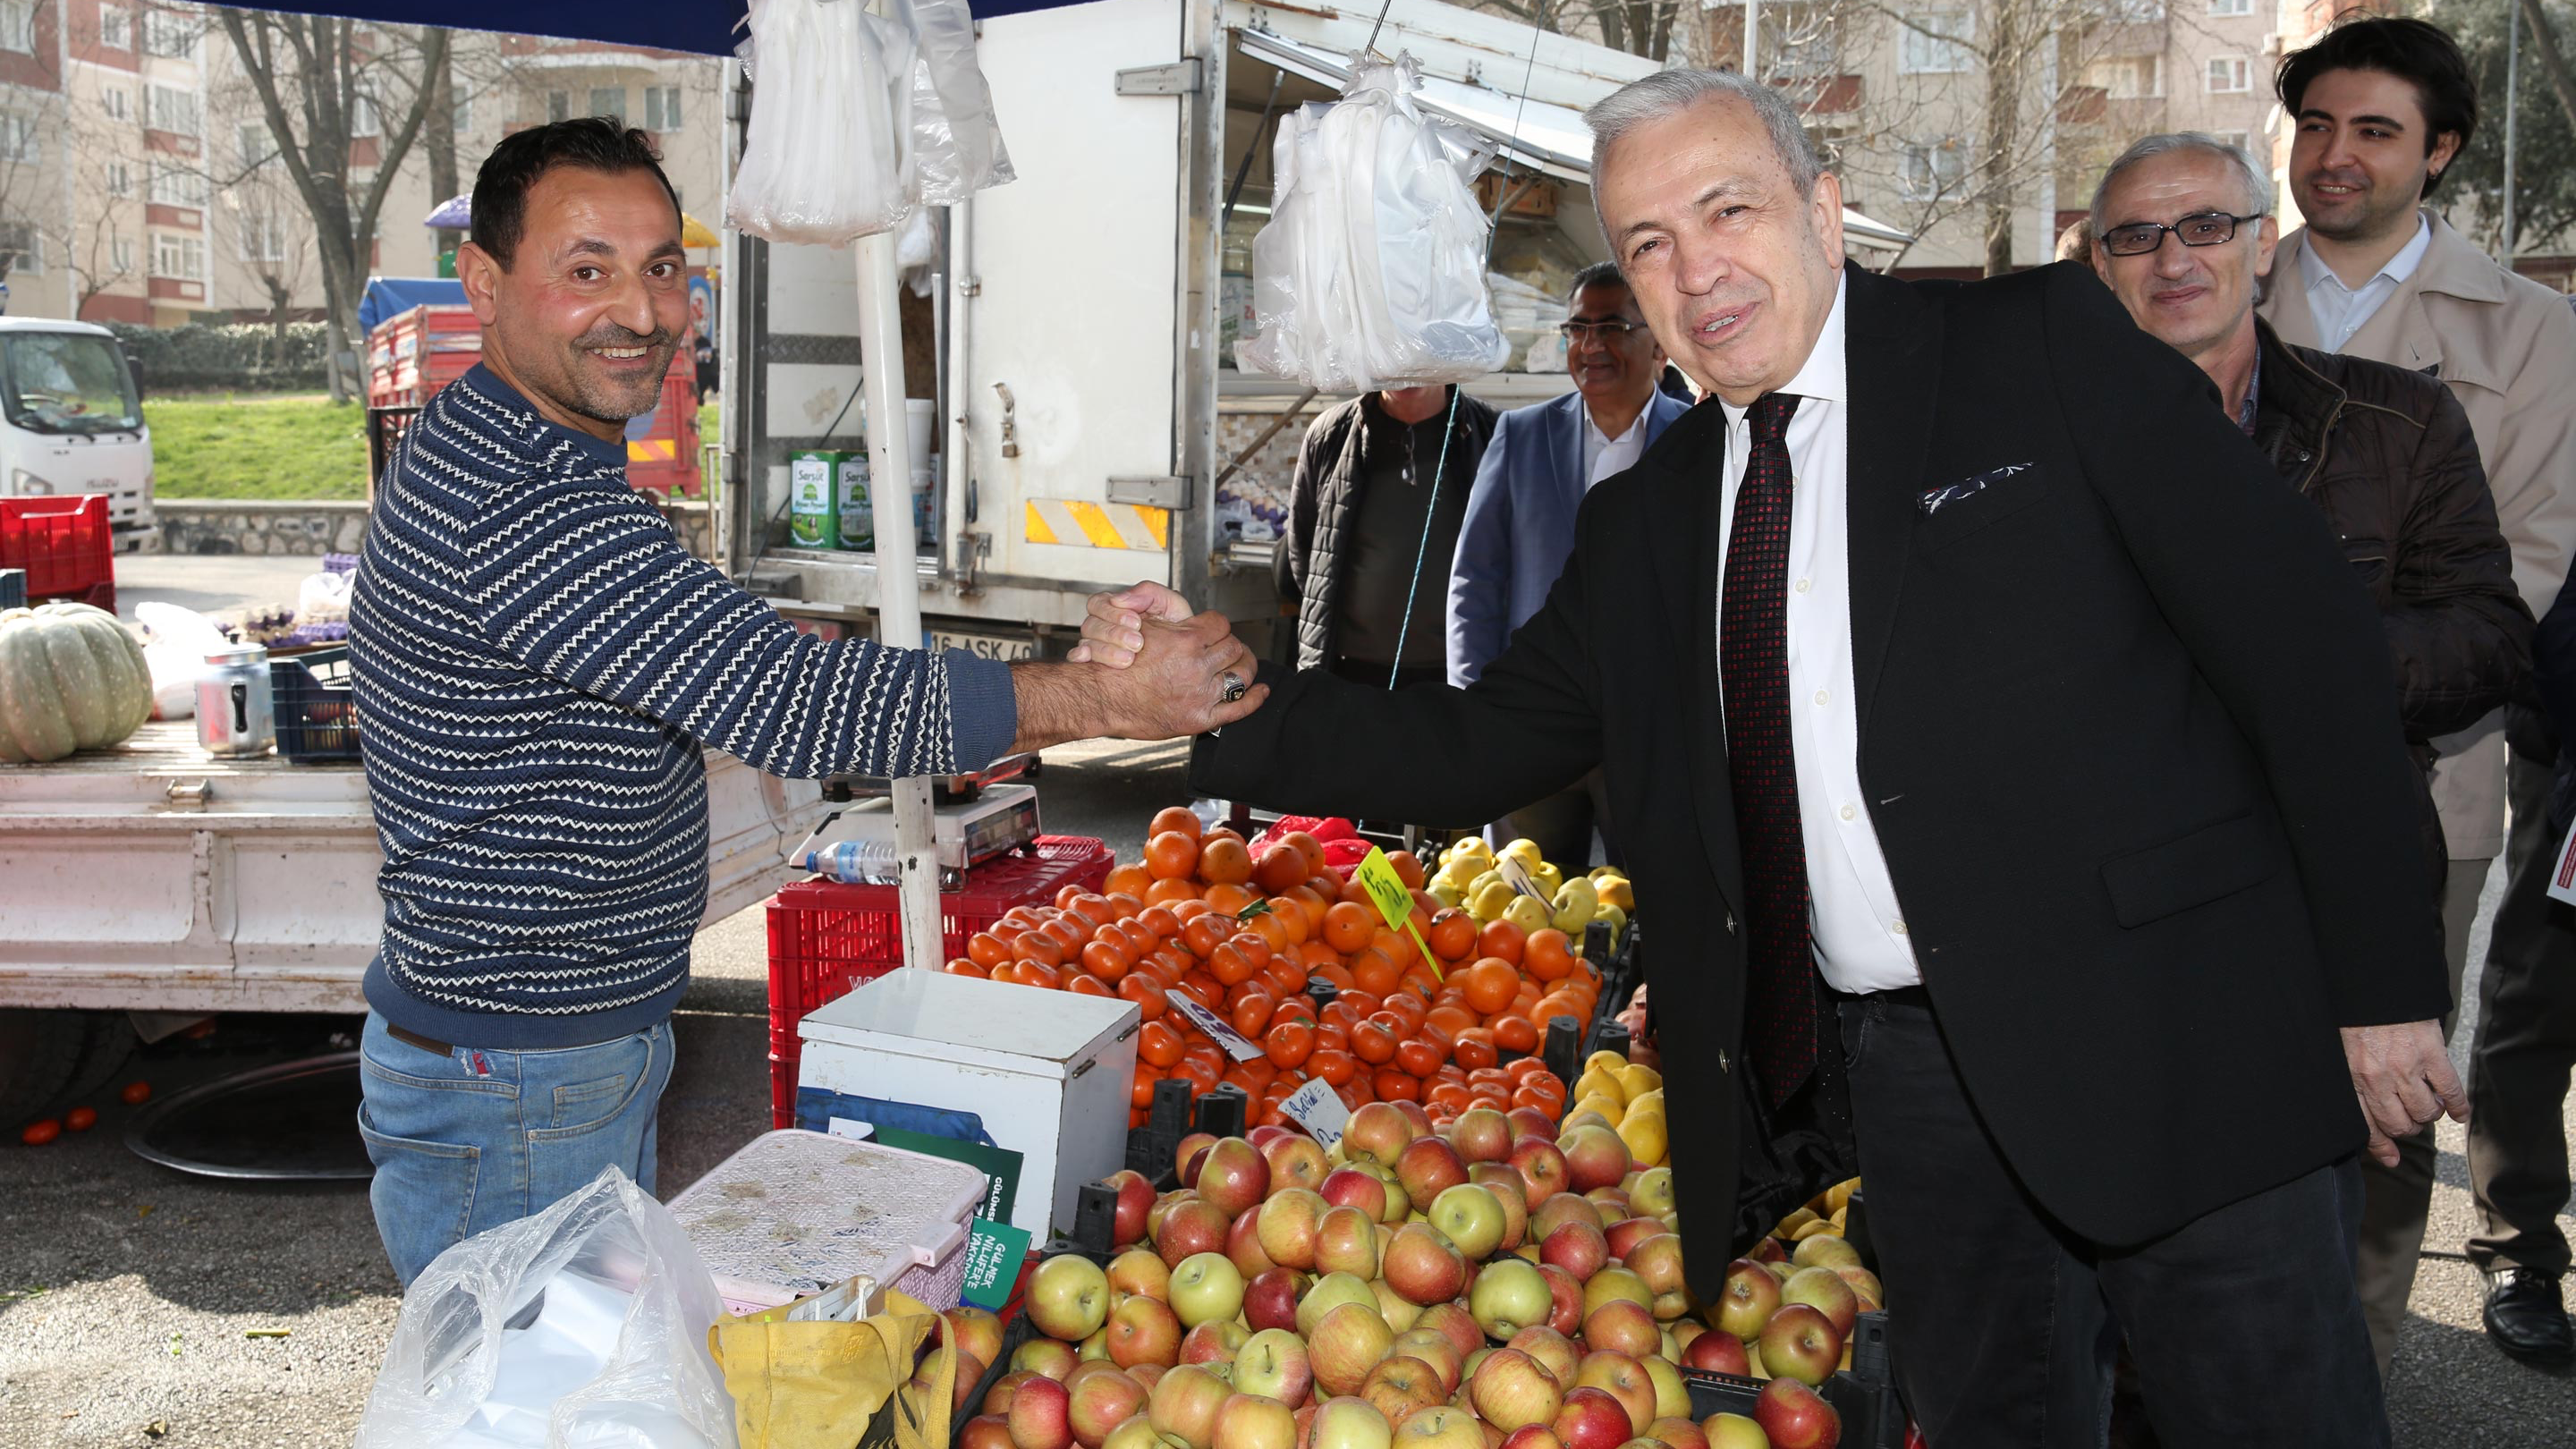 Şadi Özdemir Projeleri - Pazarcılar öğle yemeğini Şadi Özdemir ile paylaştı  | 